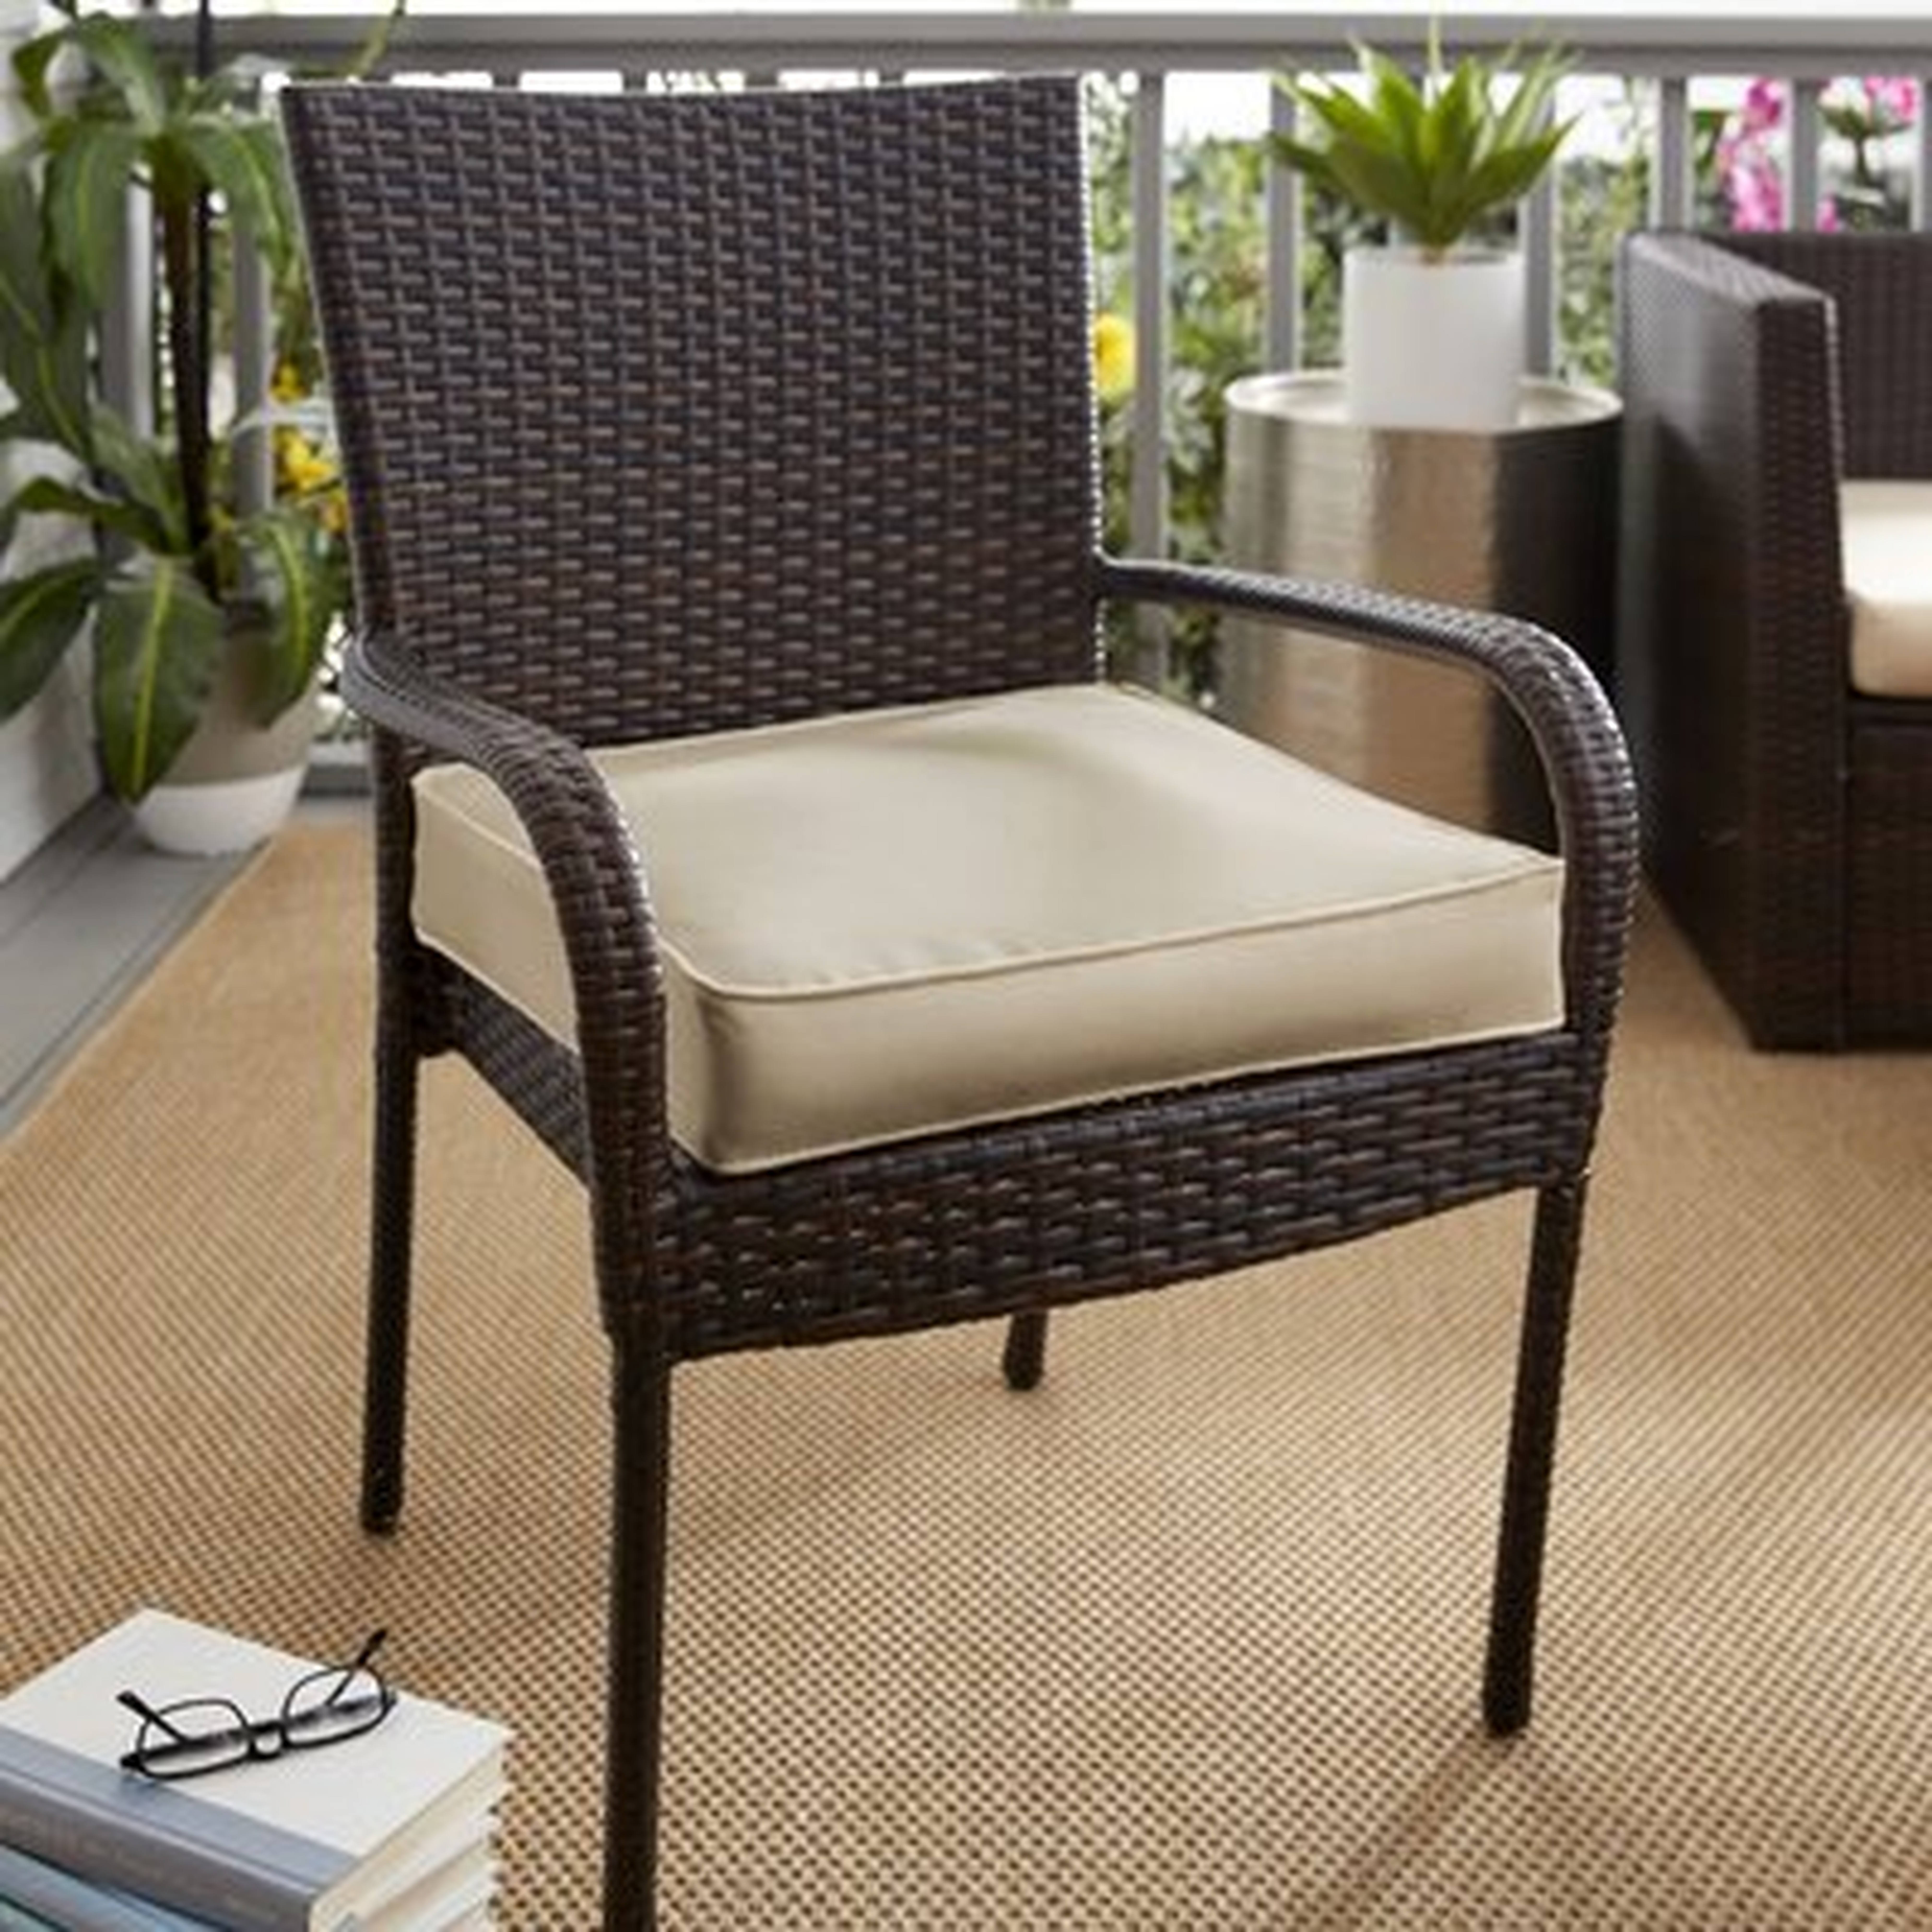 Indoor/Outdoor Chair Cushion - Birch Lane